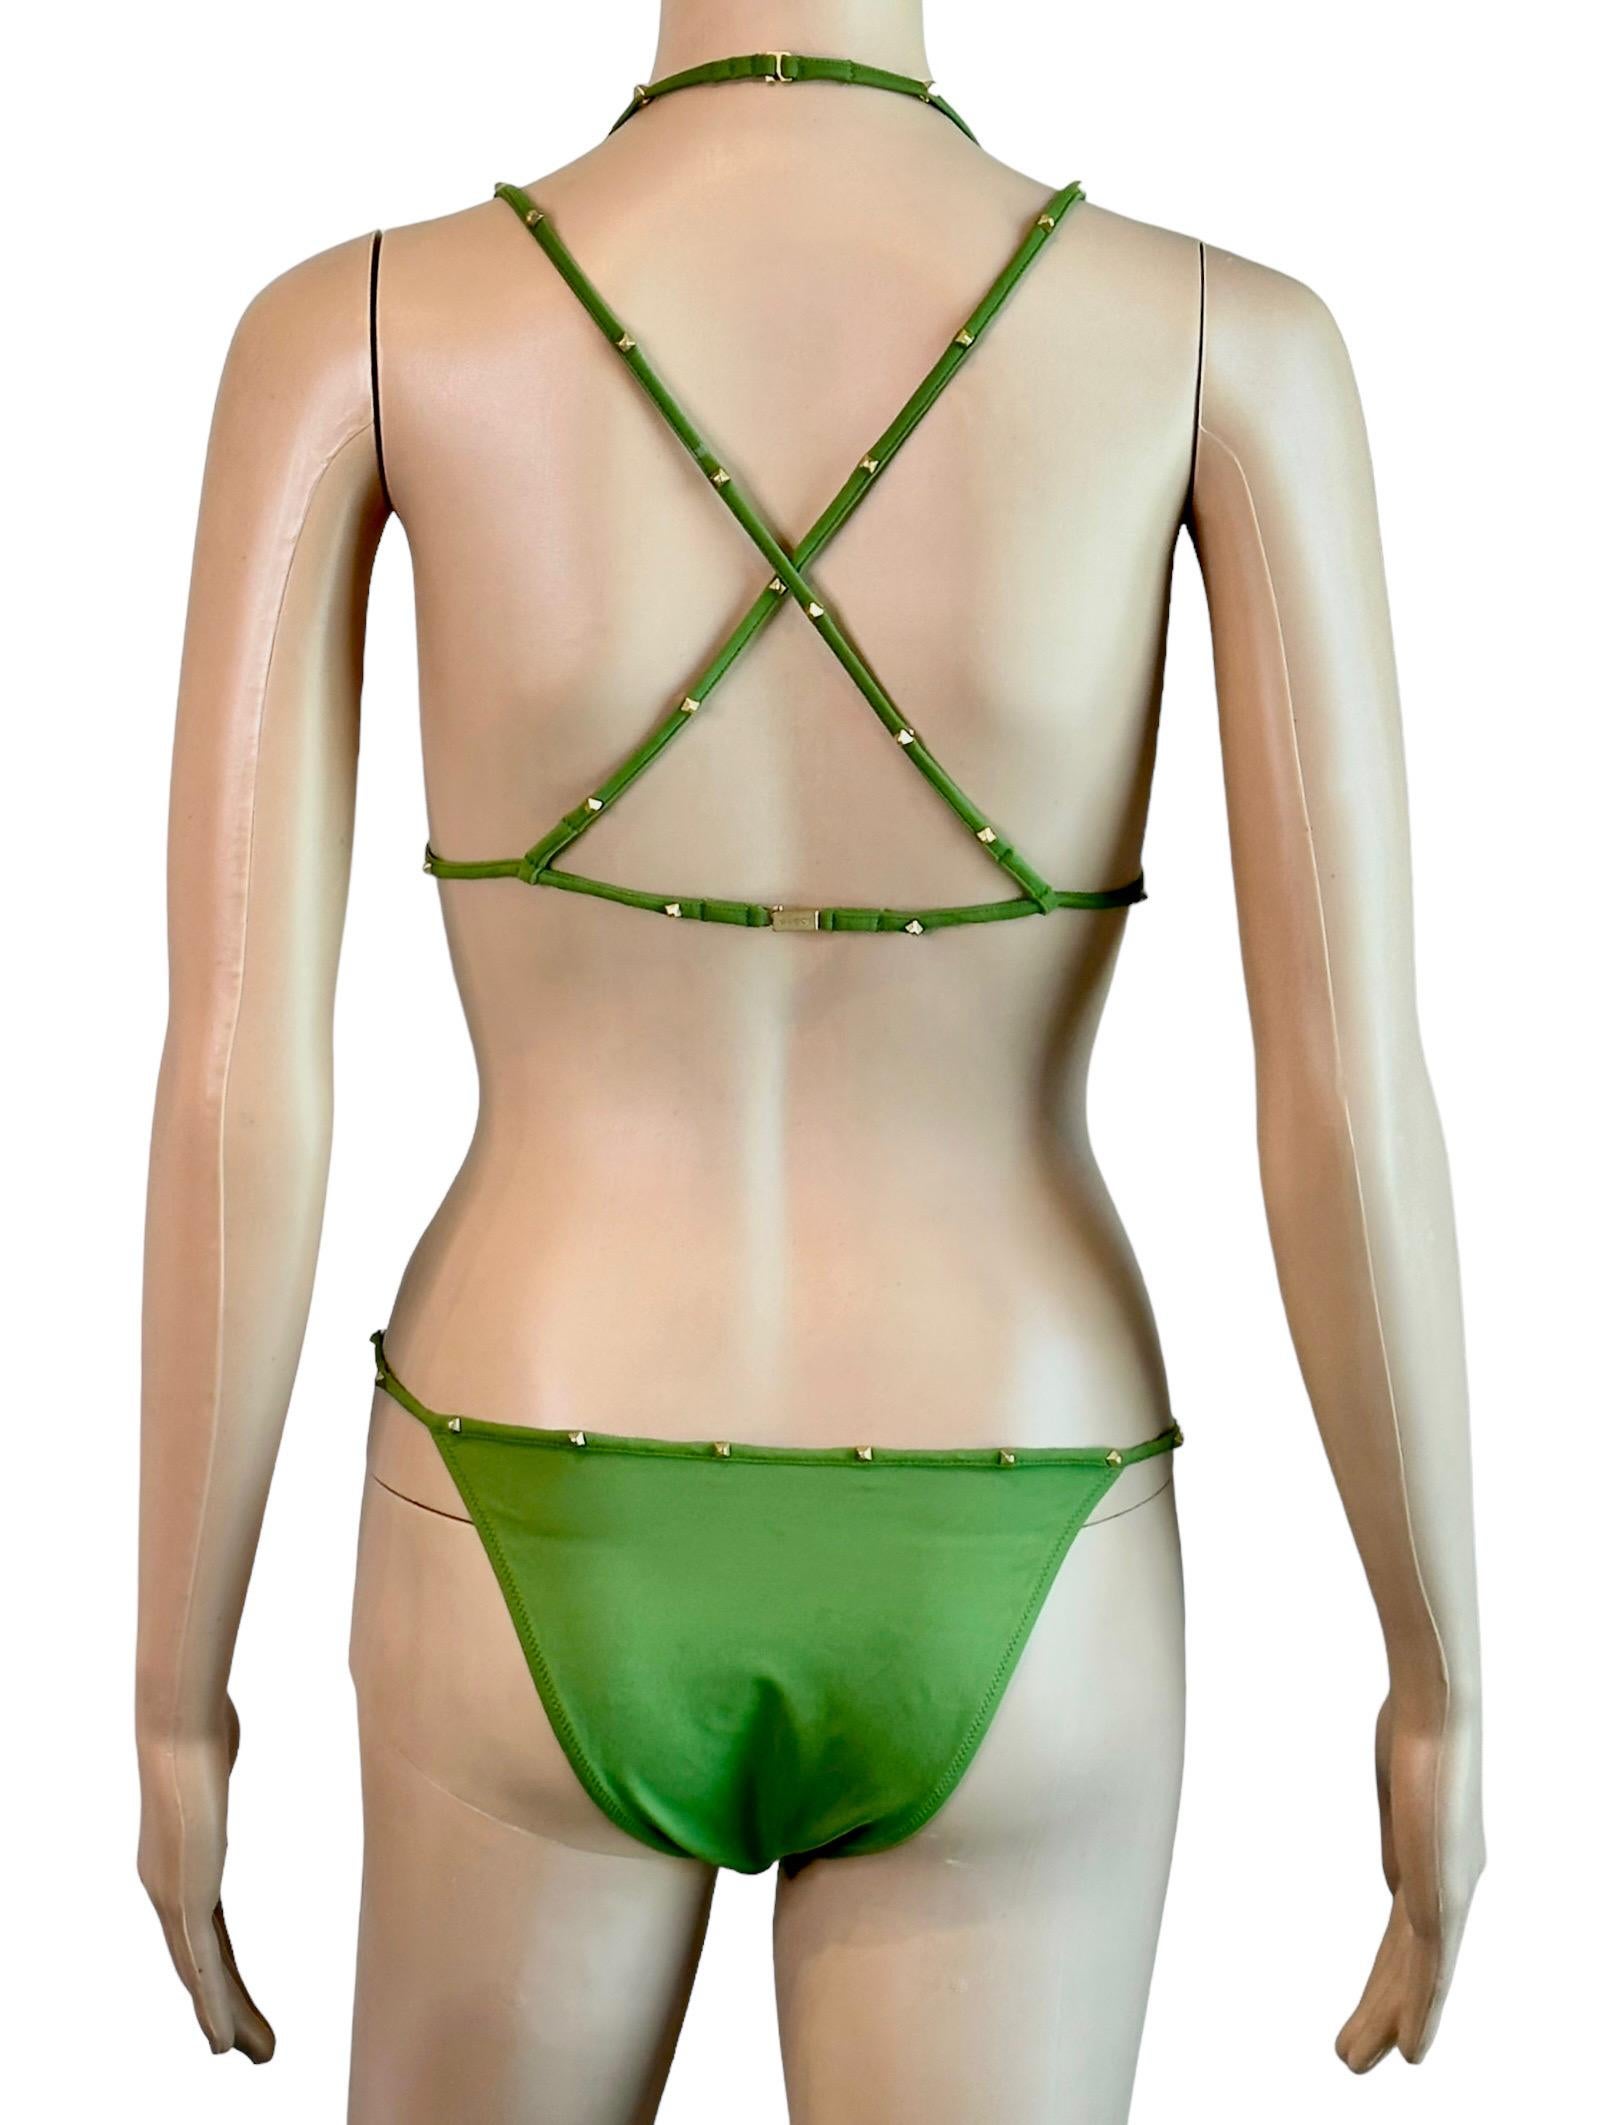 Tom Ford for Gucci F/W 2003 Bondage Studded Two-Piece Bikini Swimsuit Swimwear Size S